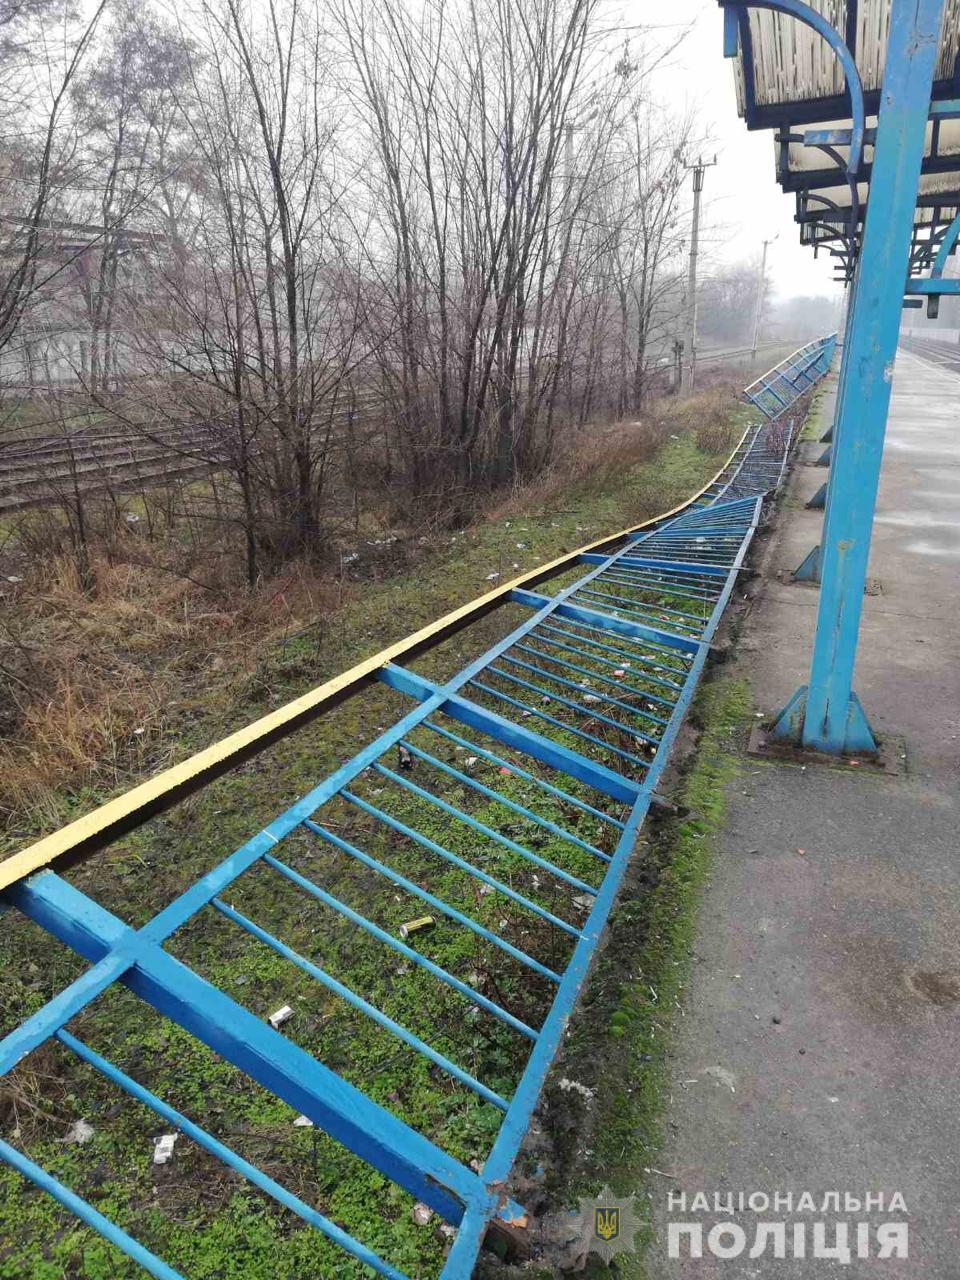 Двое несовершеннолетних сломали забор на железнодорожной платформе. Новости Днепра